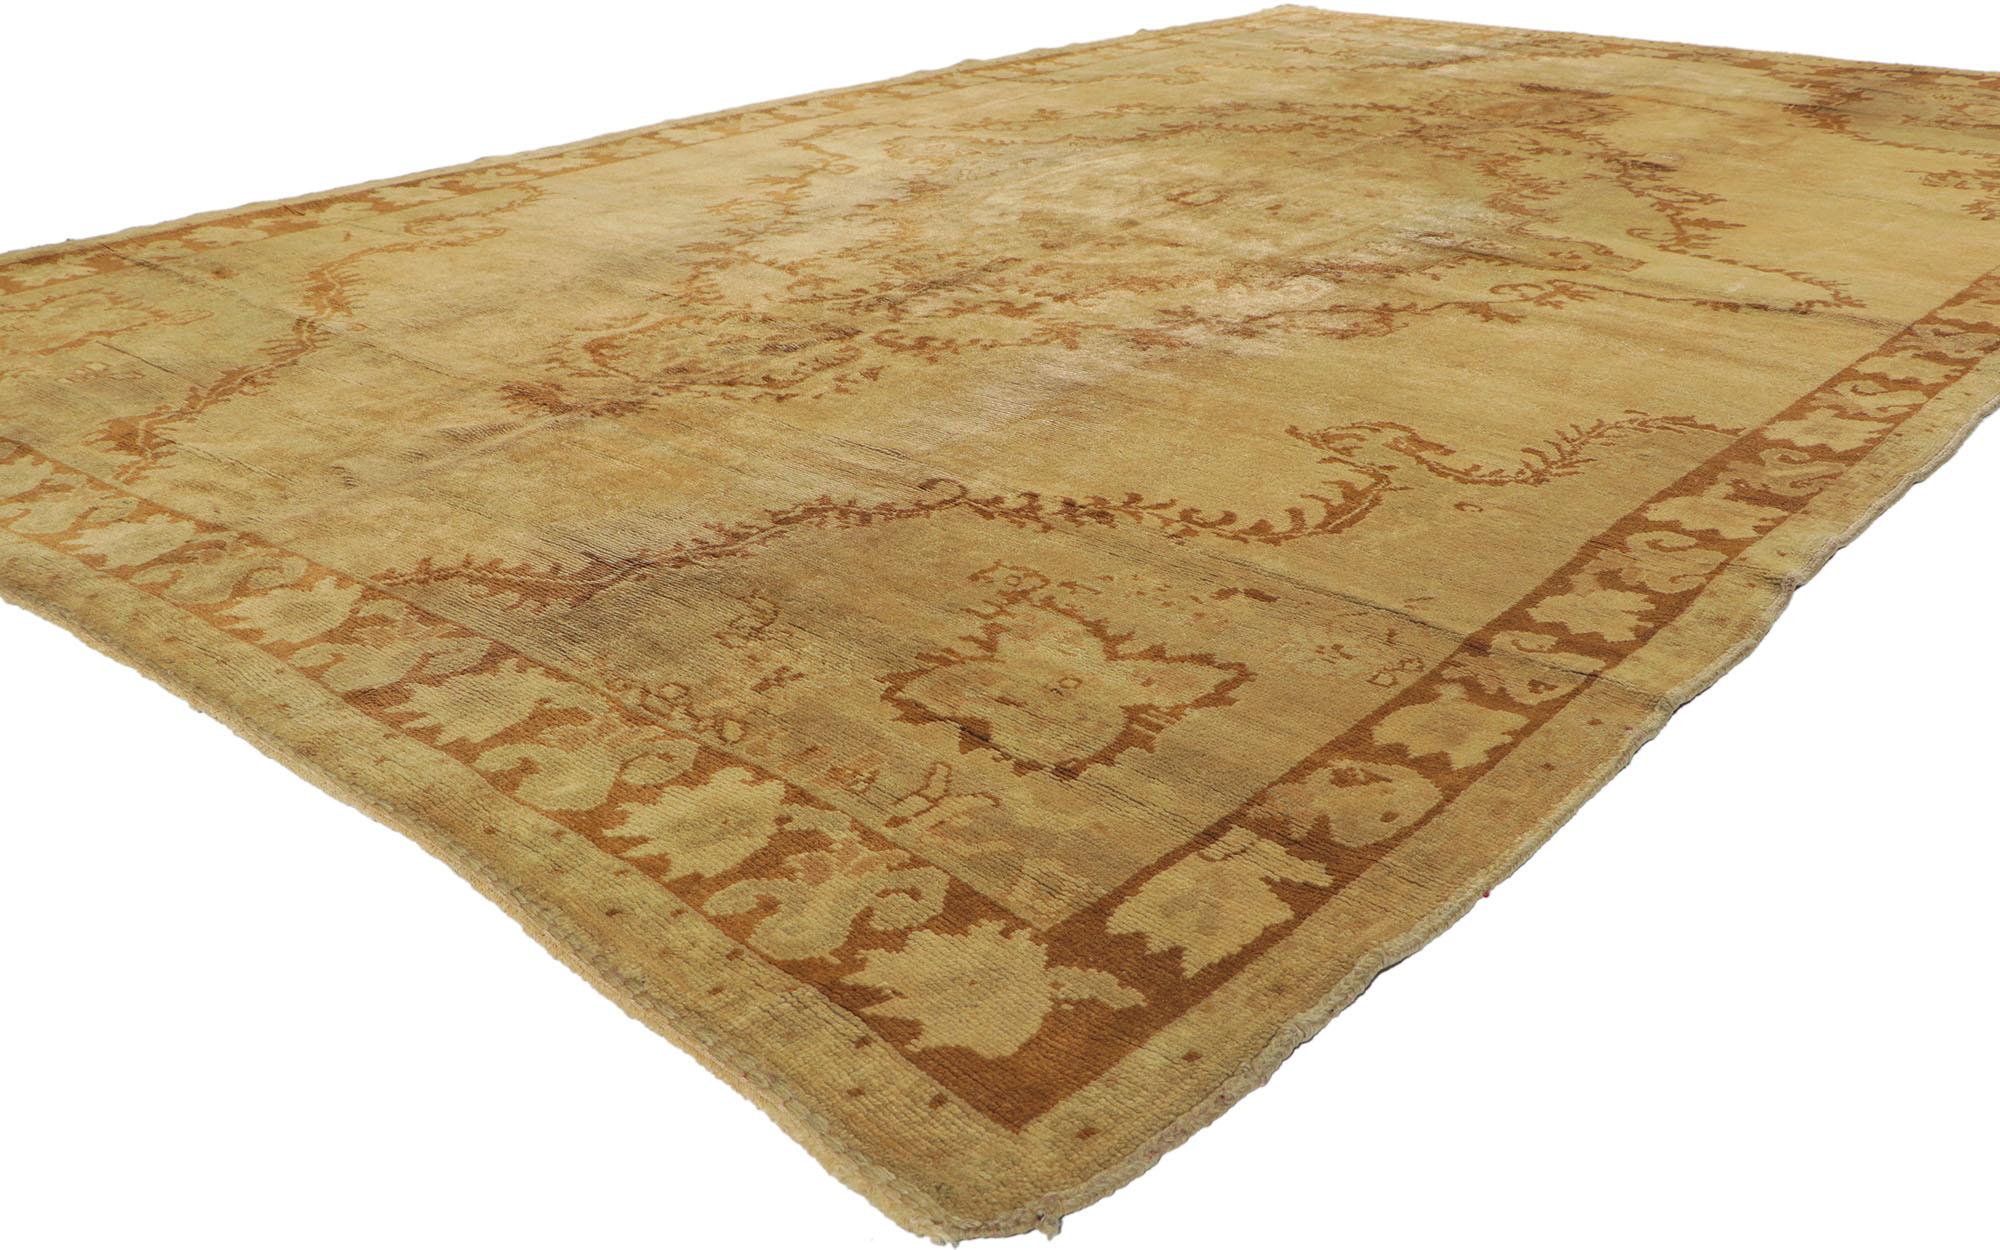 50448, alter türkischer Oushak-Teppich im warmen russischen Dachas Luxe Home-Stil. Dieser handgeknüpfte türkische Oushak-Teppich aus Wolle zeichnet sich durch ein Medaillon in der Mitte aus, das mit Akanthusblättern und einem Girlandenkranz verziert